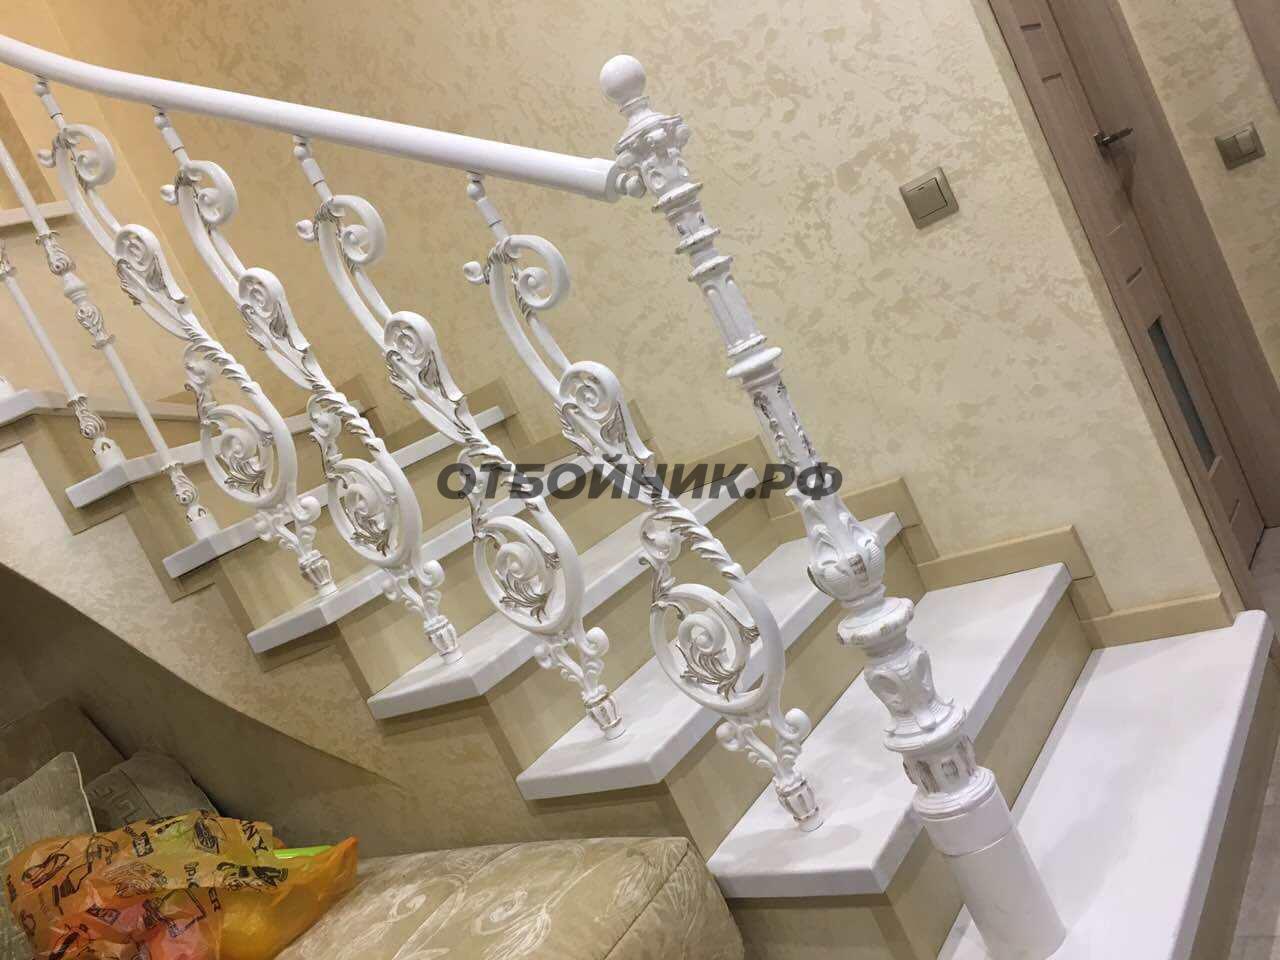 Литые перила для лестниц JN43 кованые- фото 1